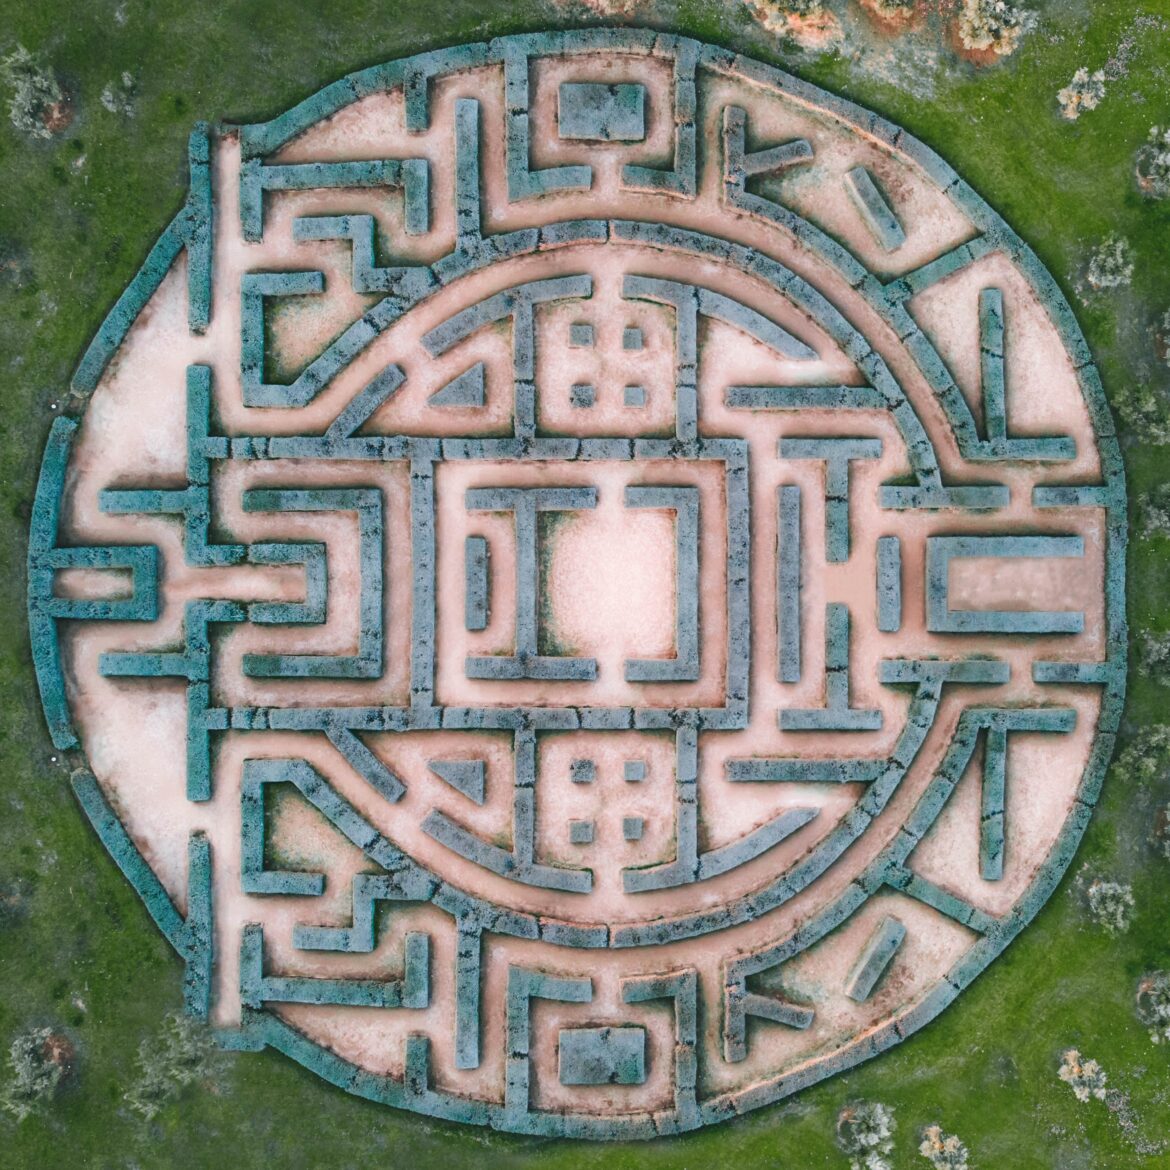 Imagem de mandala/labirinto representando a formação simbólica da consciência